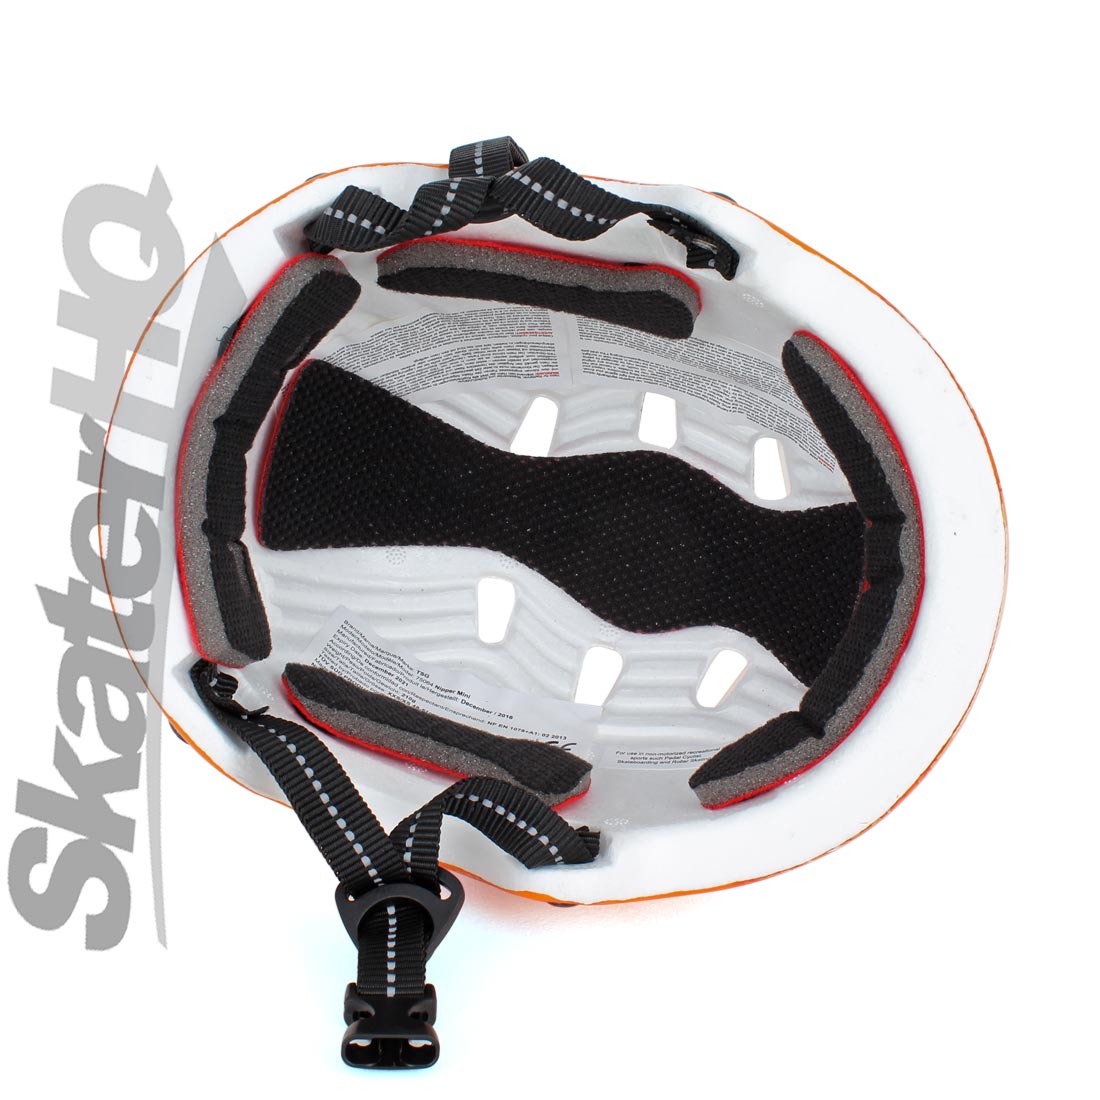 TSG Nipper Mini Zorro JXXS/JXS 48-51cm Helmets